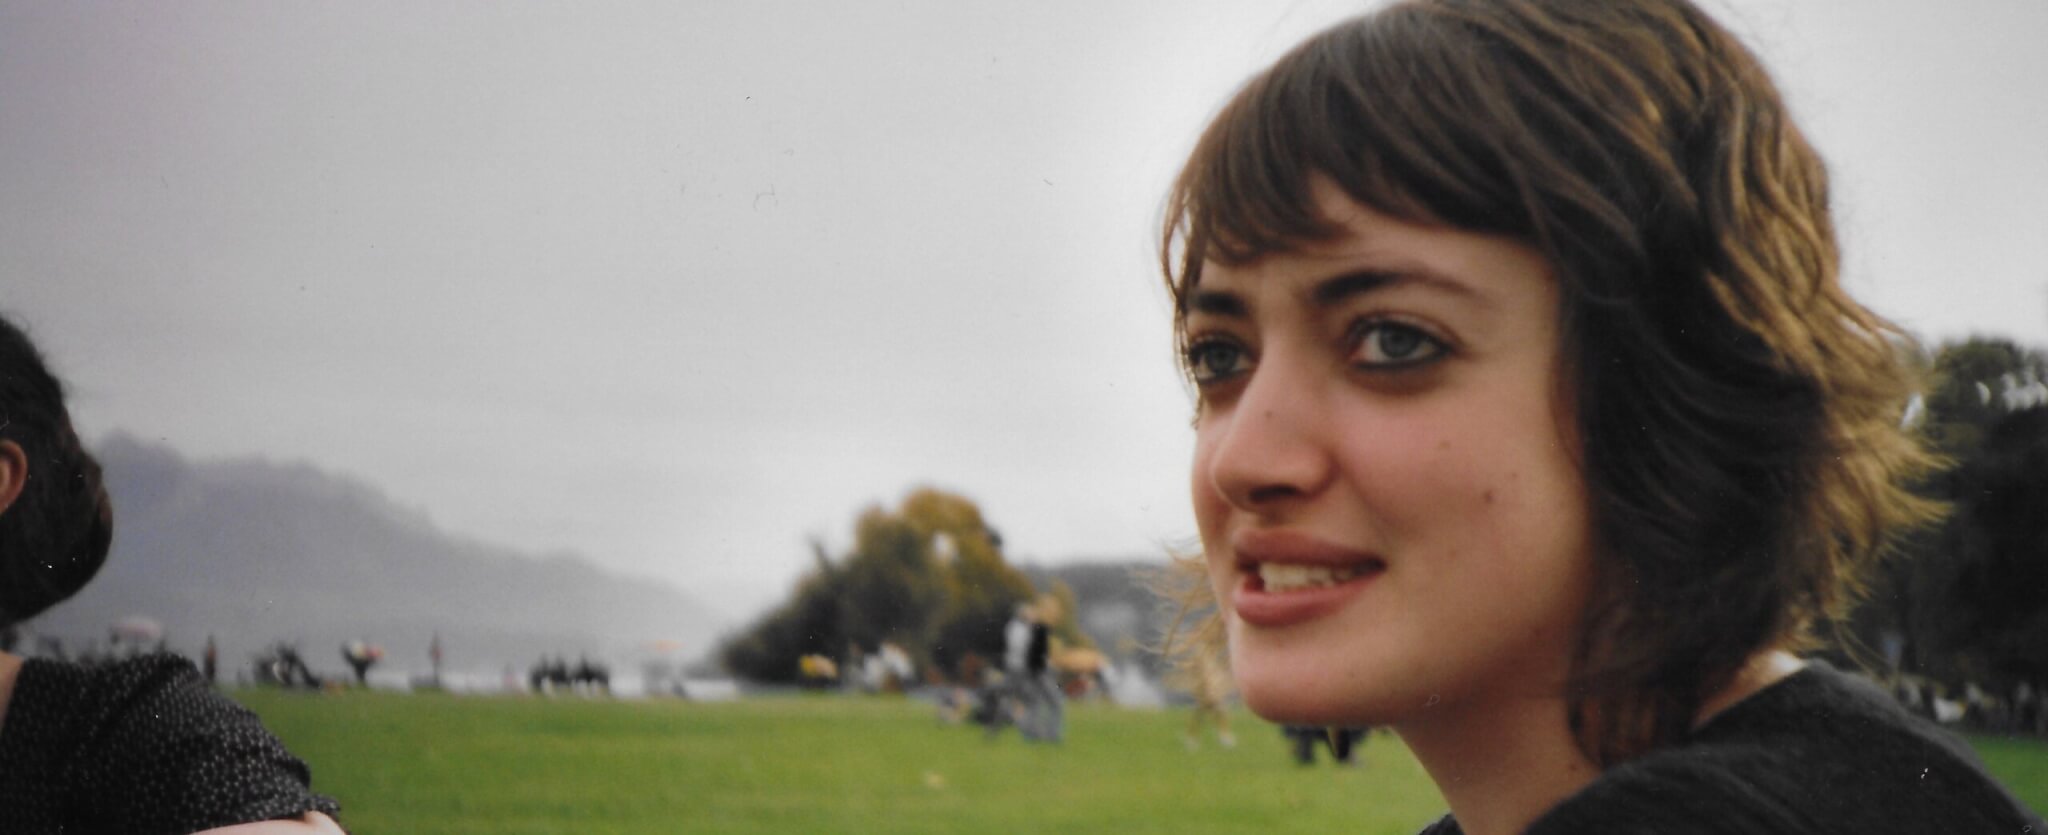 Julie Siboni, ex-étudiante à l’Université Lyon 2 : « Ce prof a cassé ma vie »